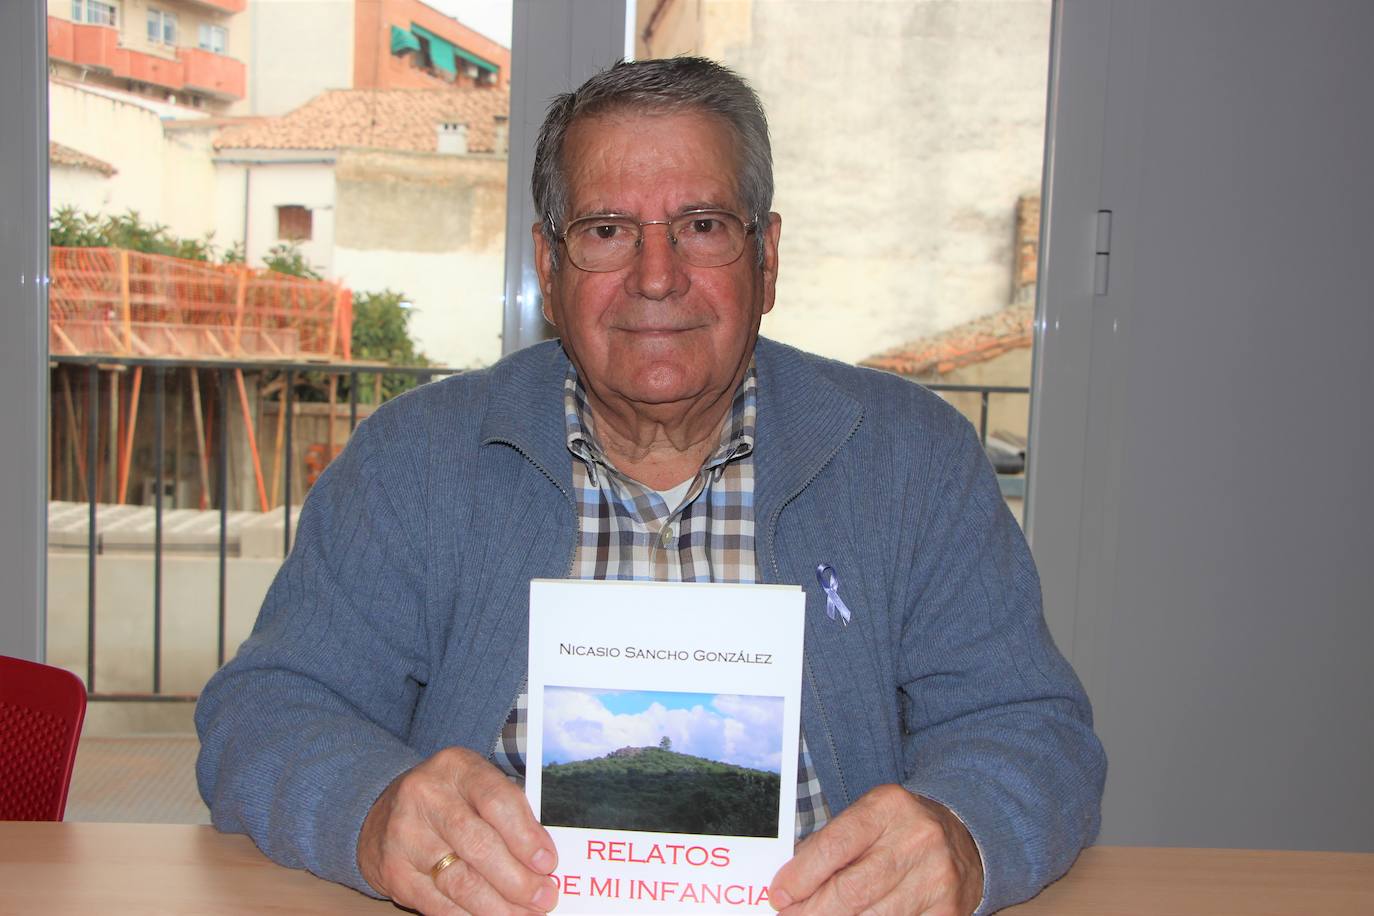 Nicasio Sancho González mostrando su libro recién publicado 'Relatos de mi infancia'.